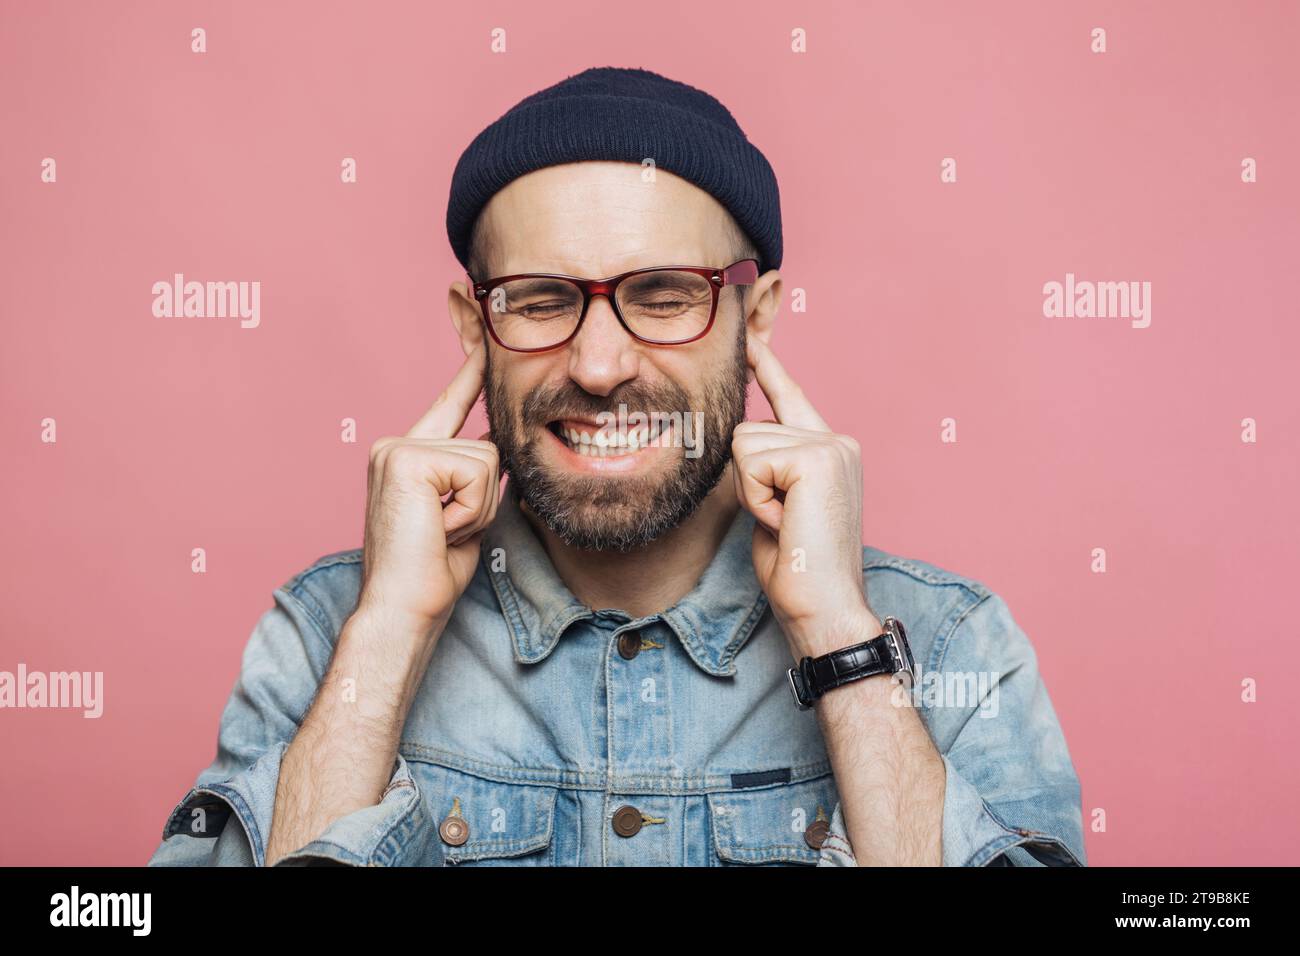 Uomo con berretto e occhiali che stringe le mani sulle orecchie, vestito in denim, su uno sfondo rosa Foto Stock